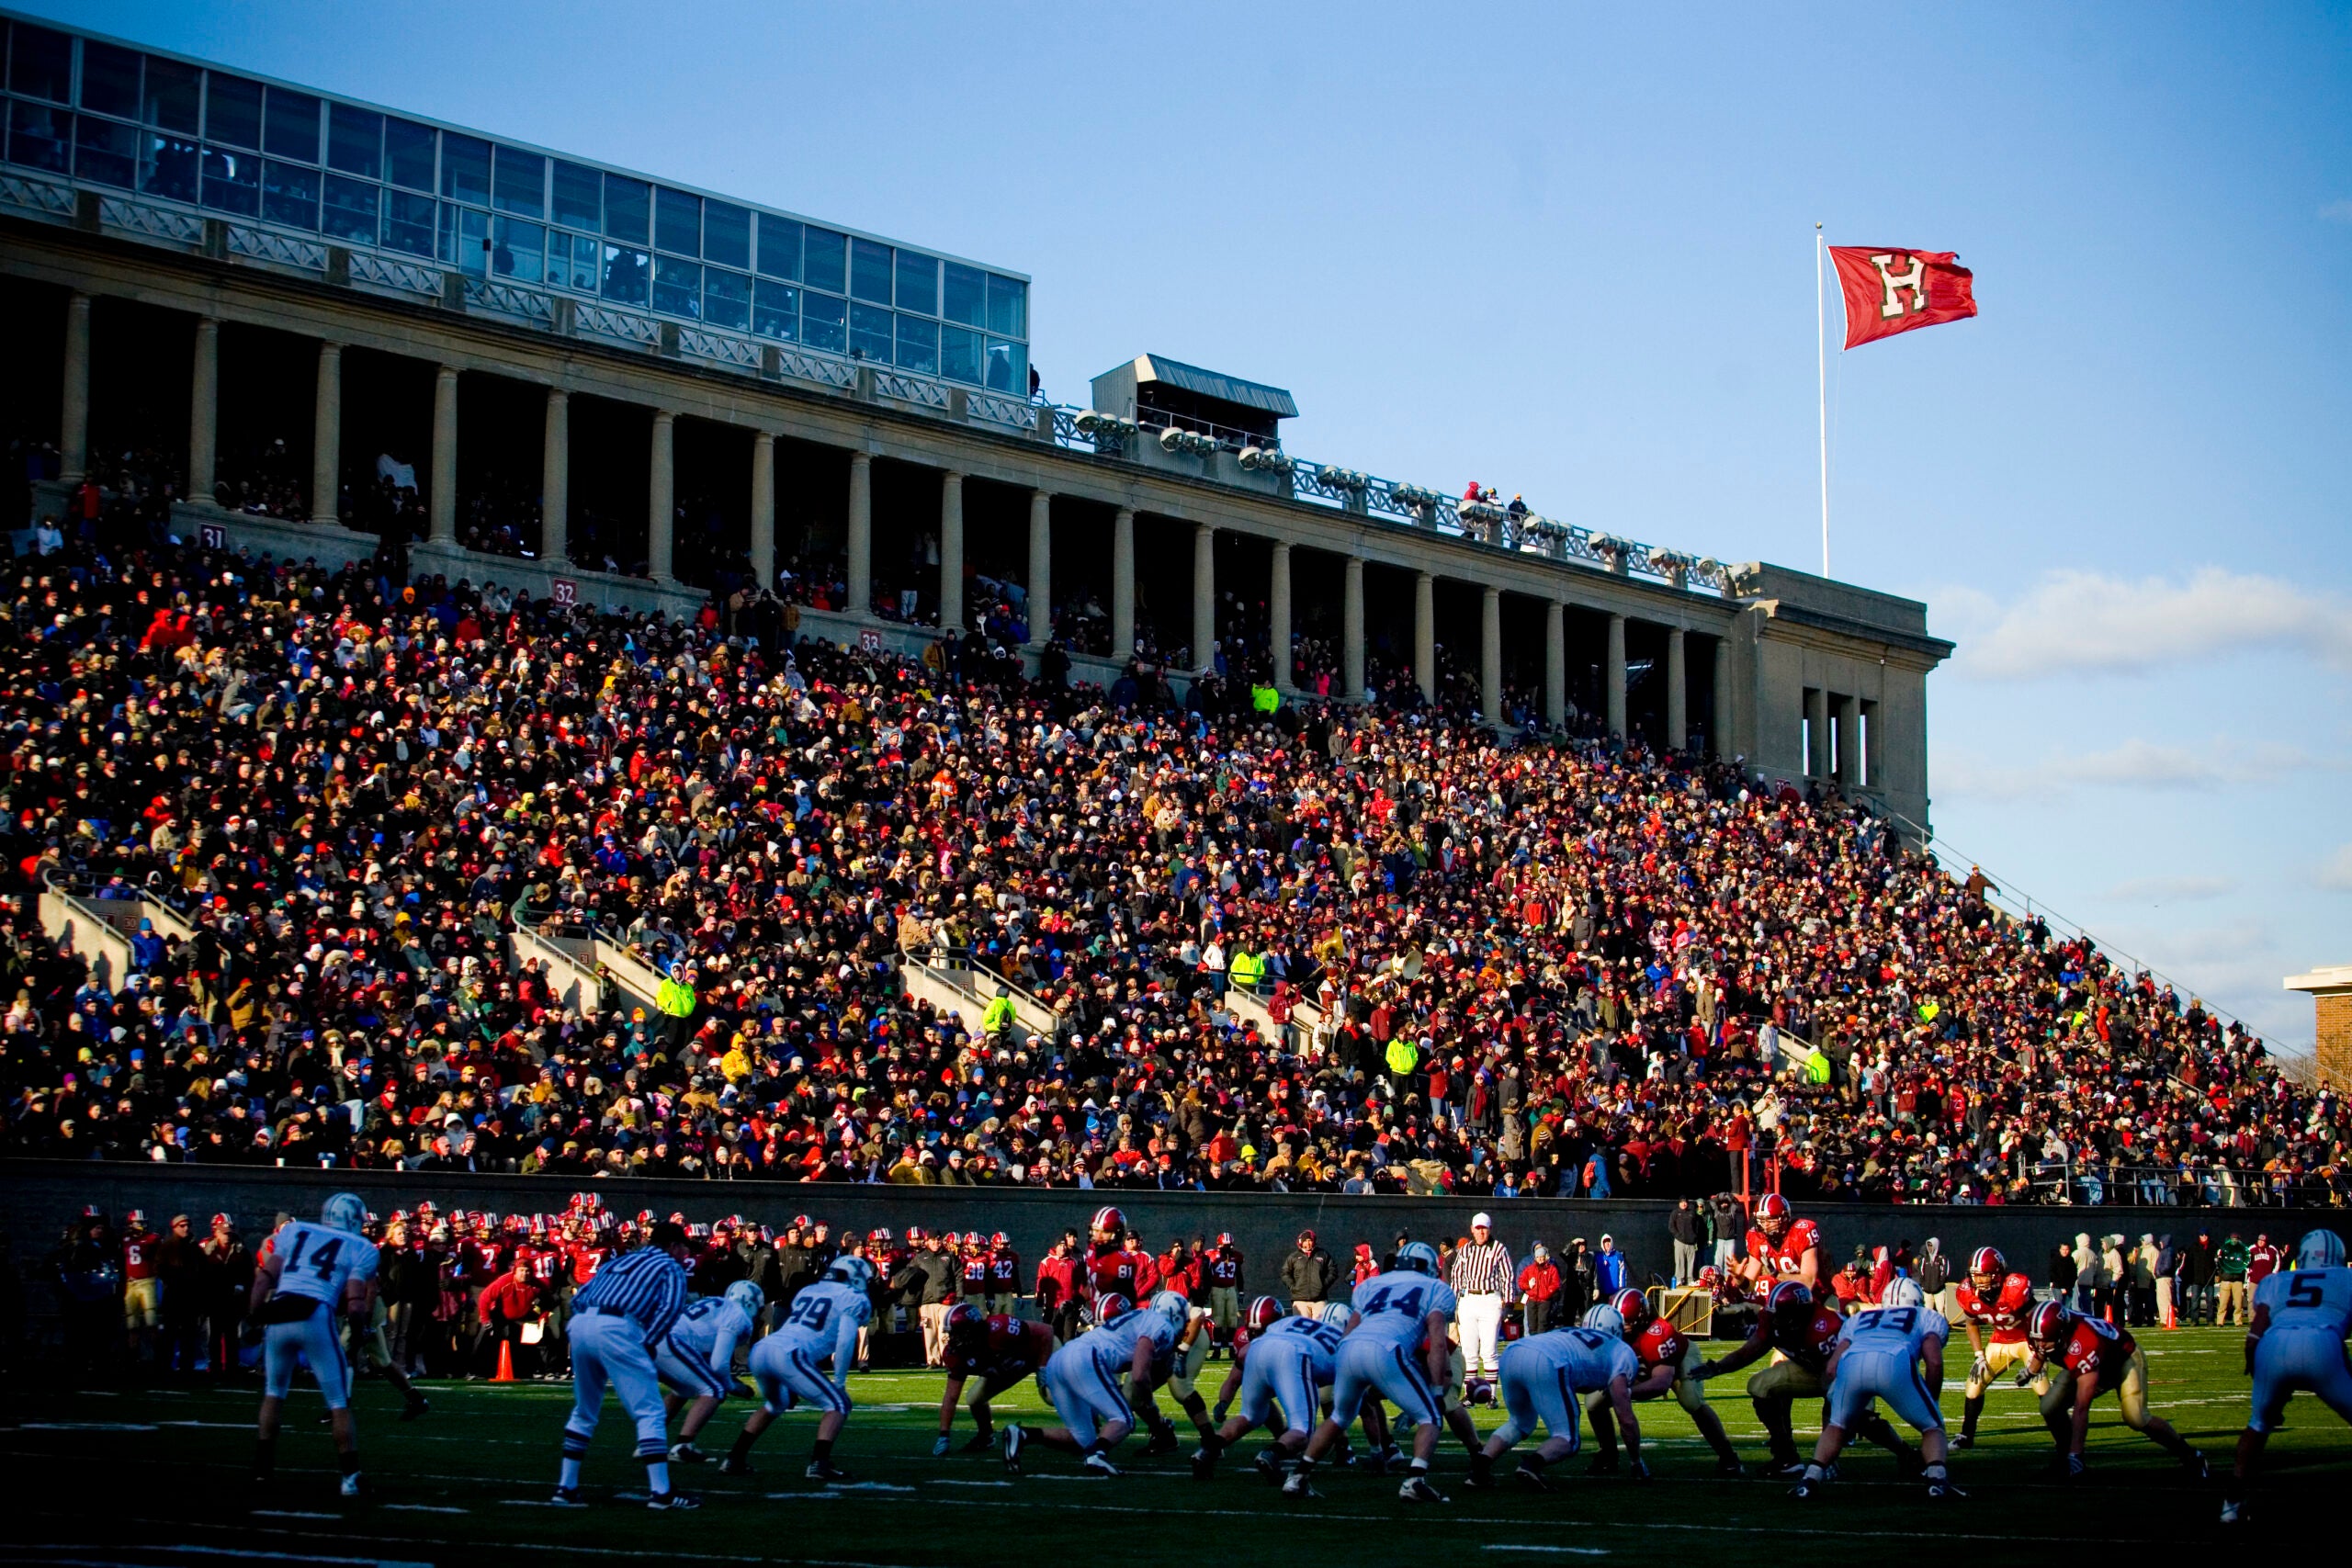 A big crowd at Harvard stadium